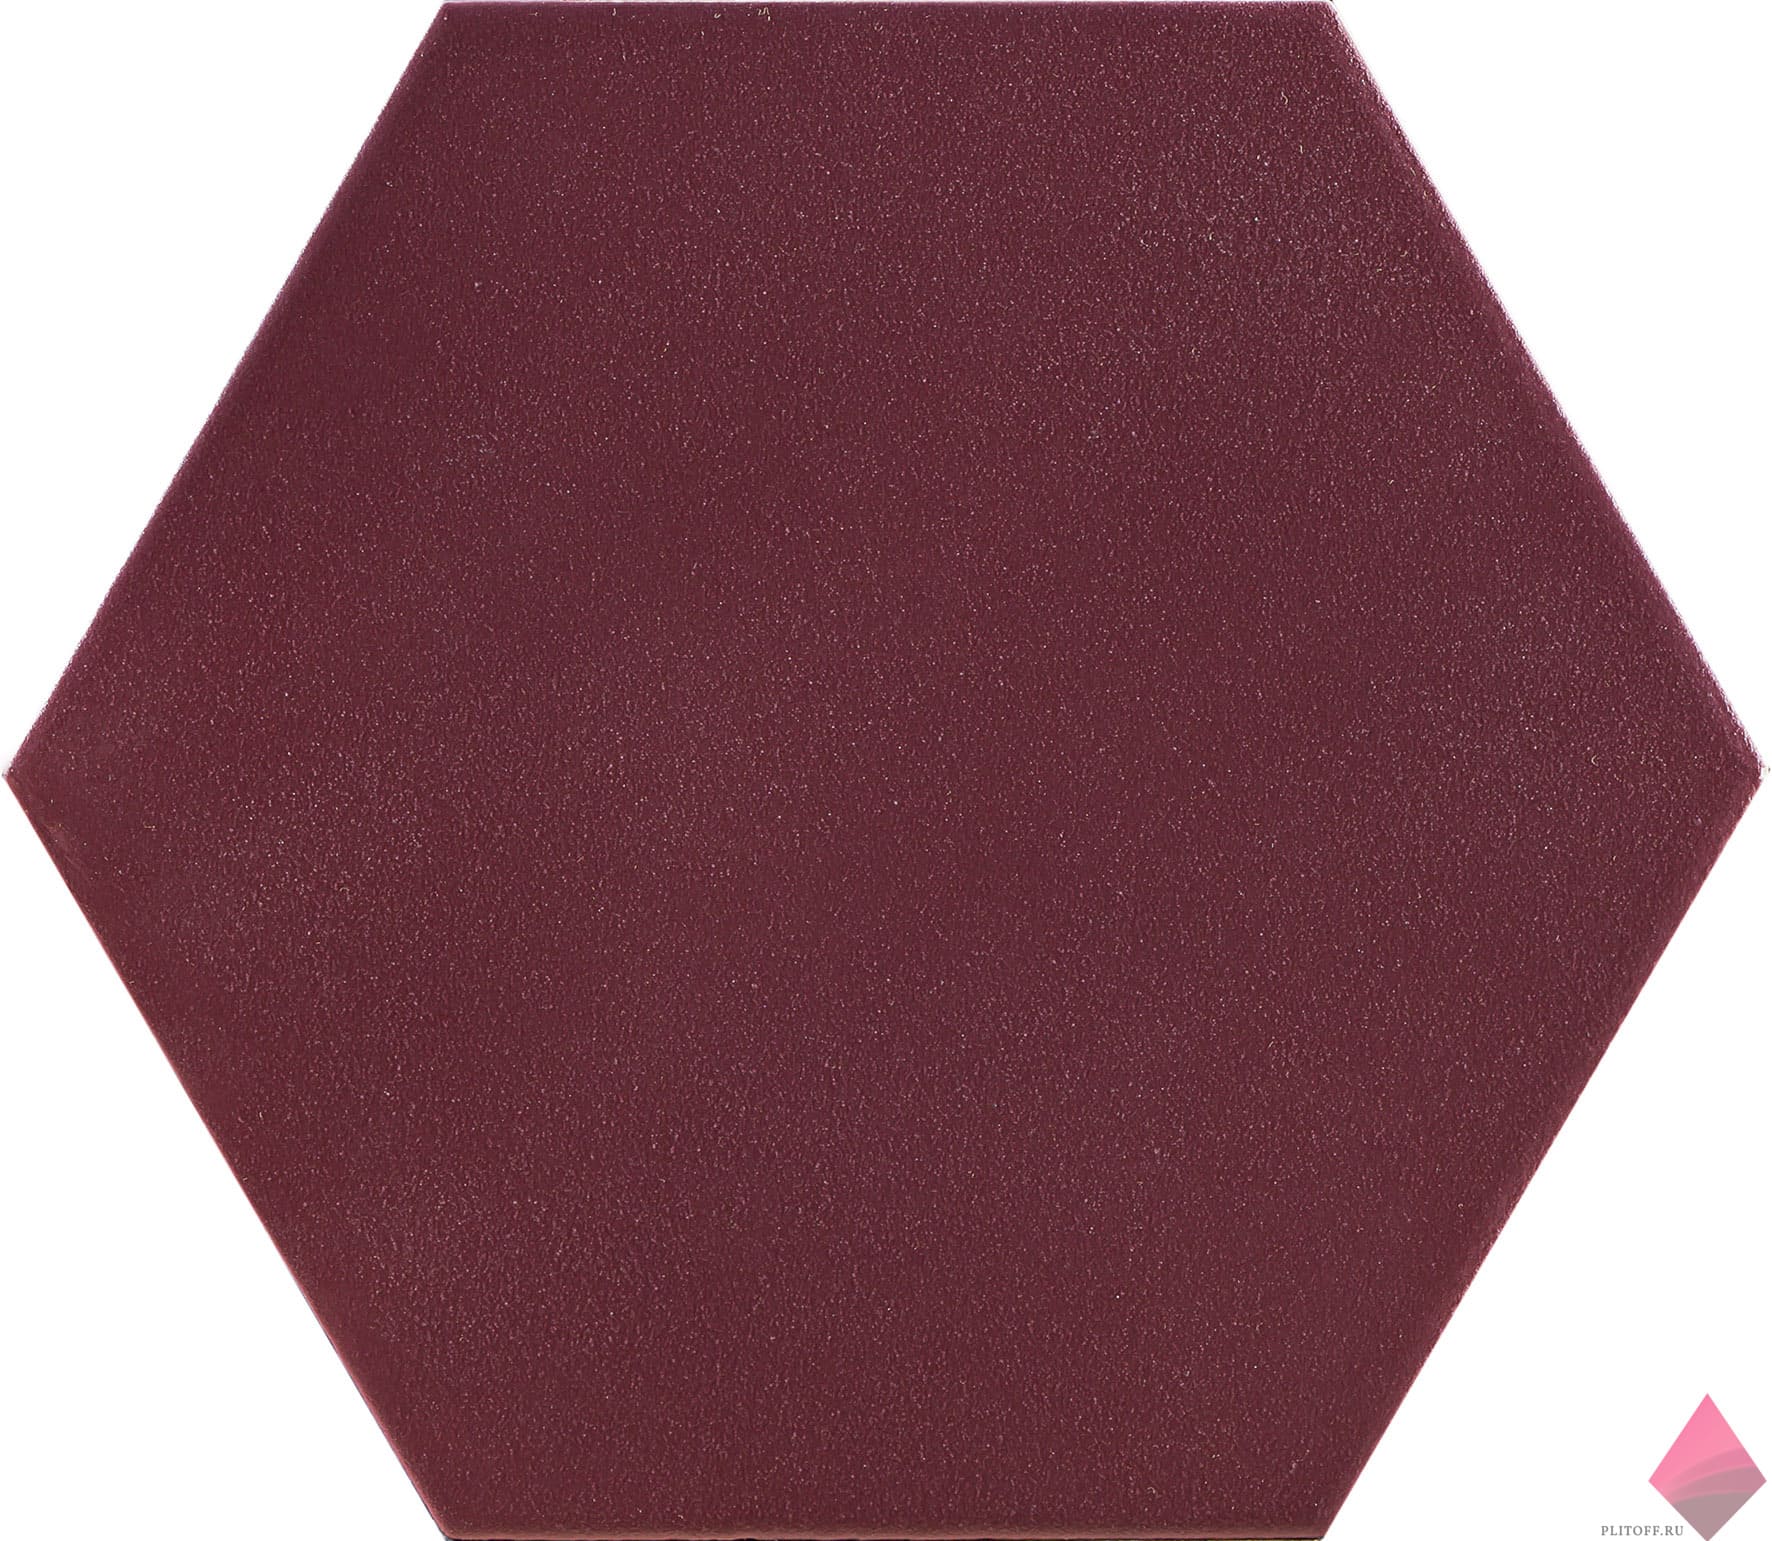 Бордовая плитка шестигранник Mayfair Hex Grana 19.8x22.8